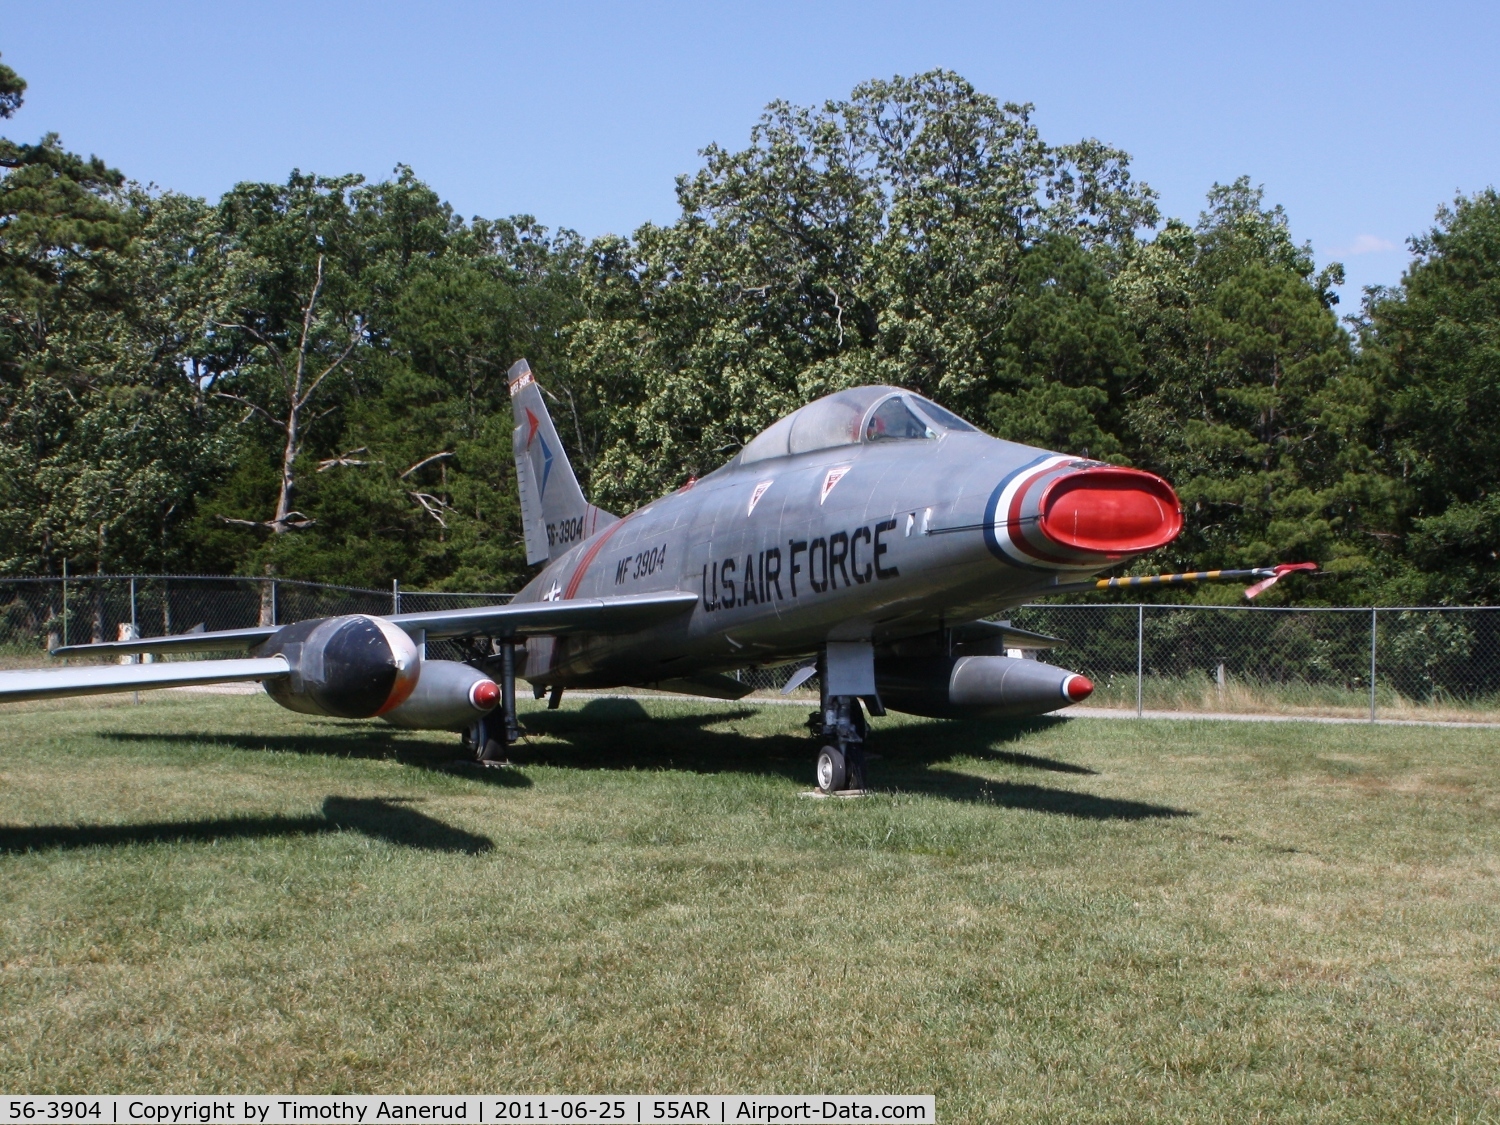 56-3904, North American F-100F Super Sabre C/N 243-178, North American F-100F-10-NA, c/n: 243-178
Silver Wings Field, 55AR, 36-25-51N, 093-41-40W